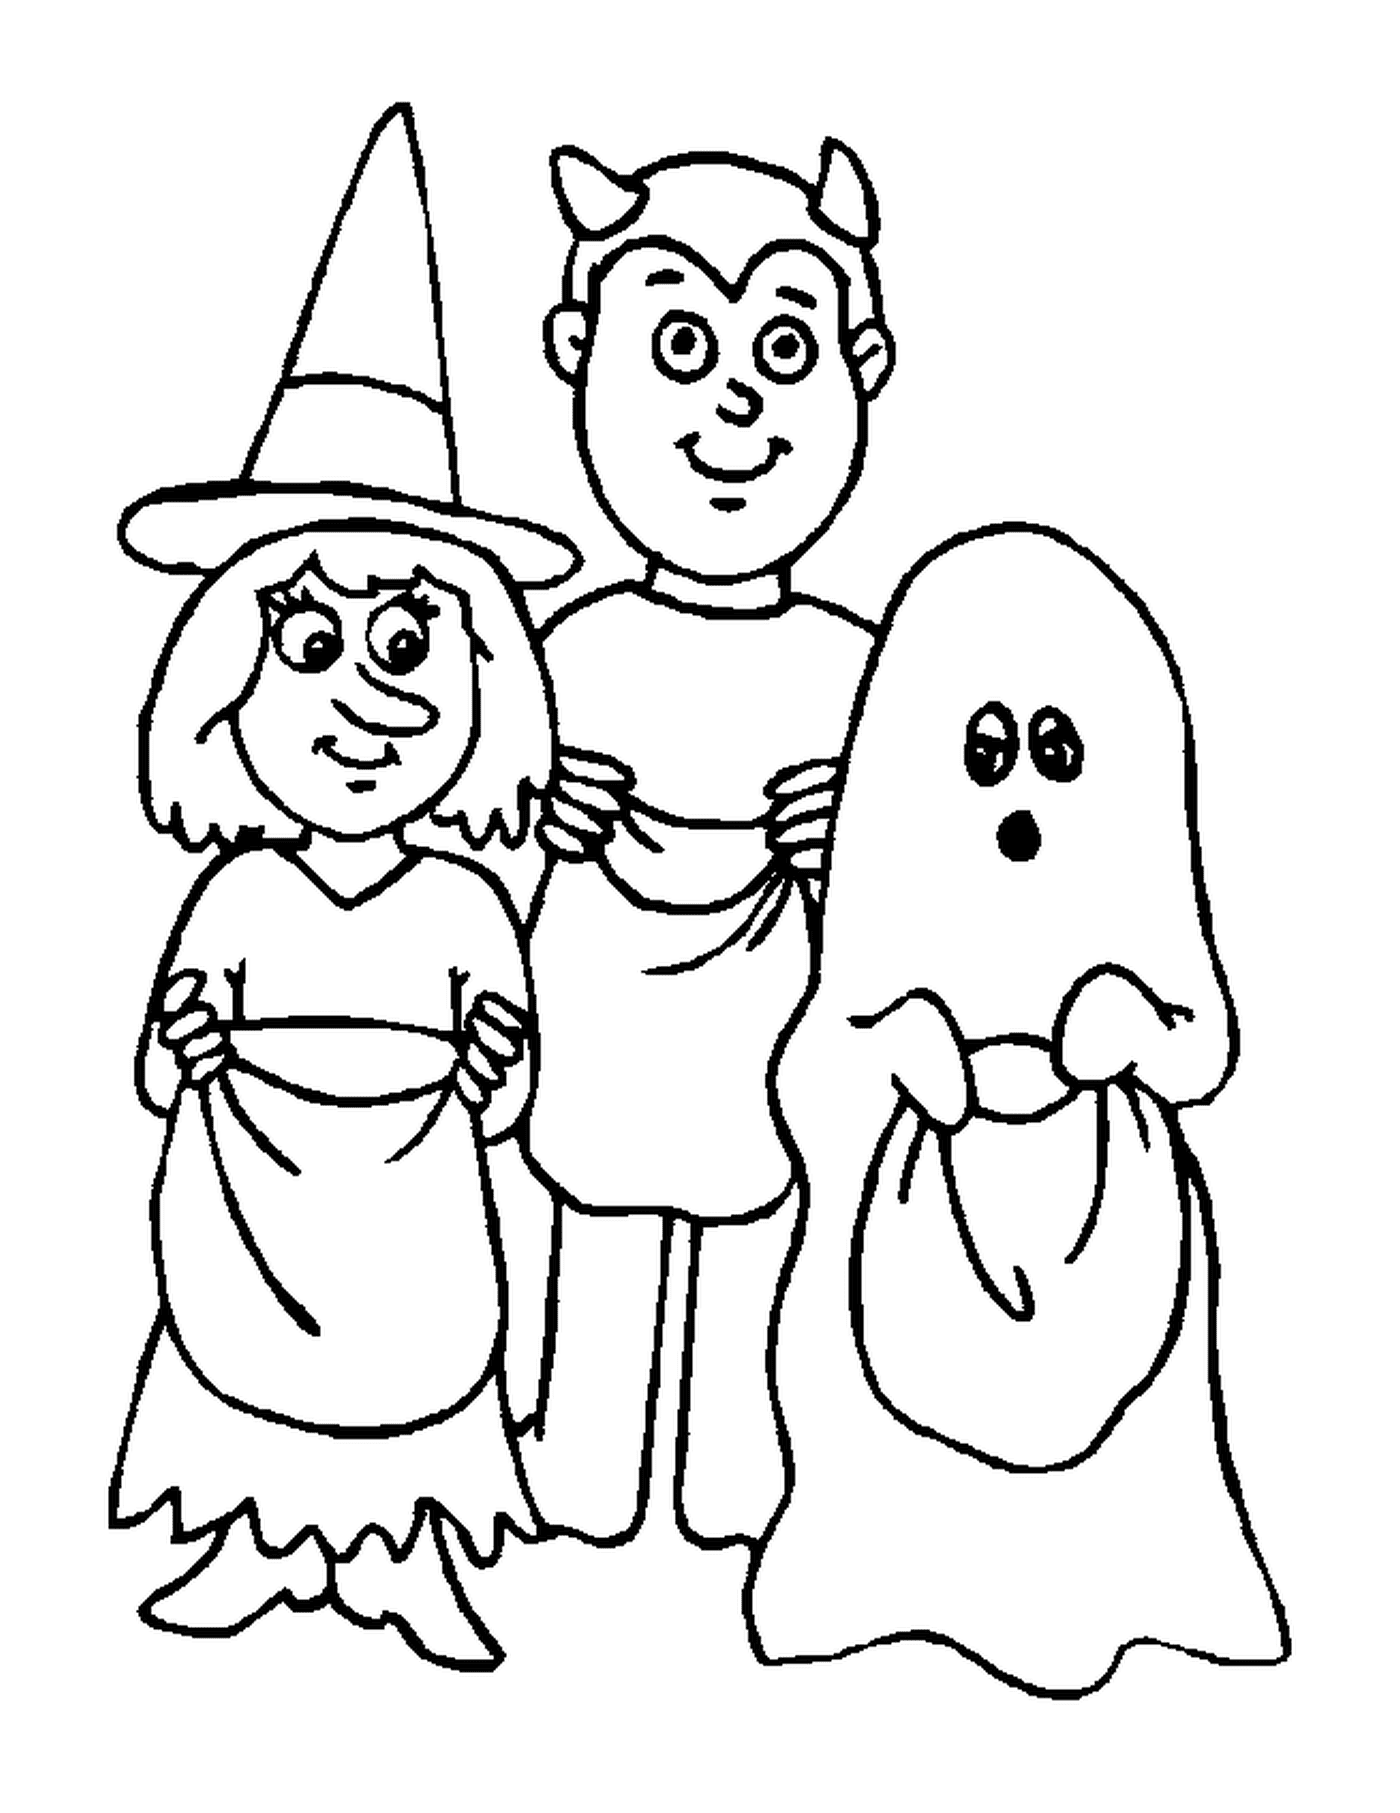  hombre, mujer y fantasma disfrazados para asustarse por Halloween 